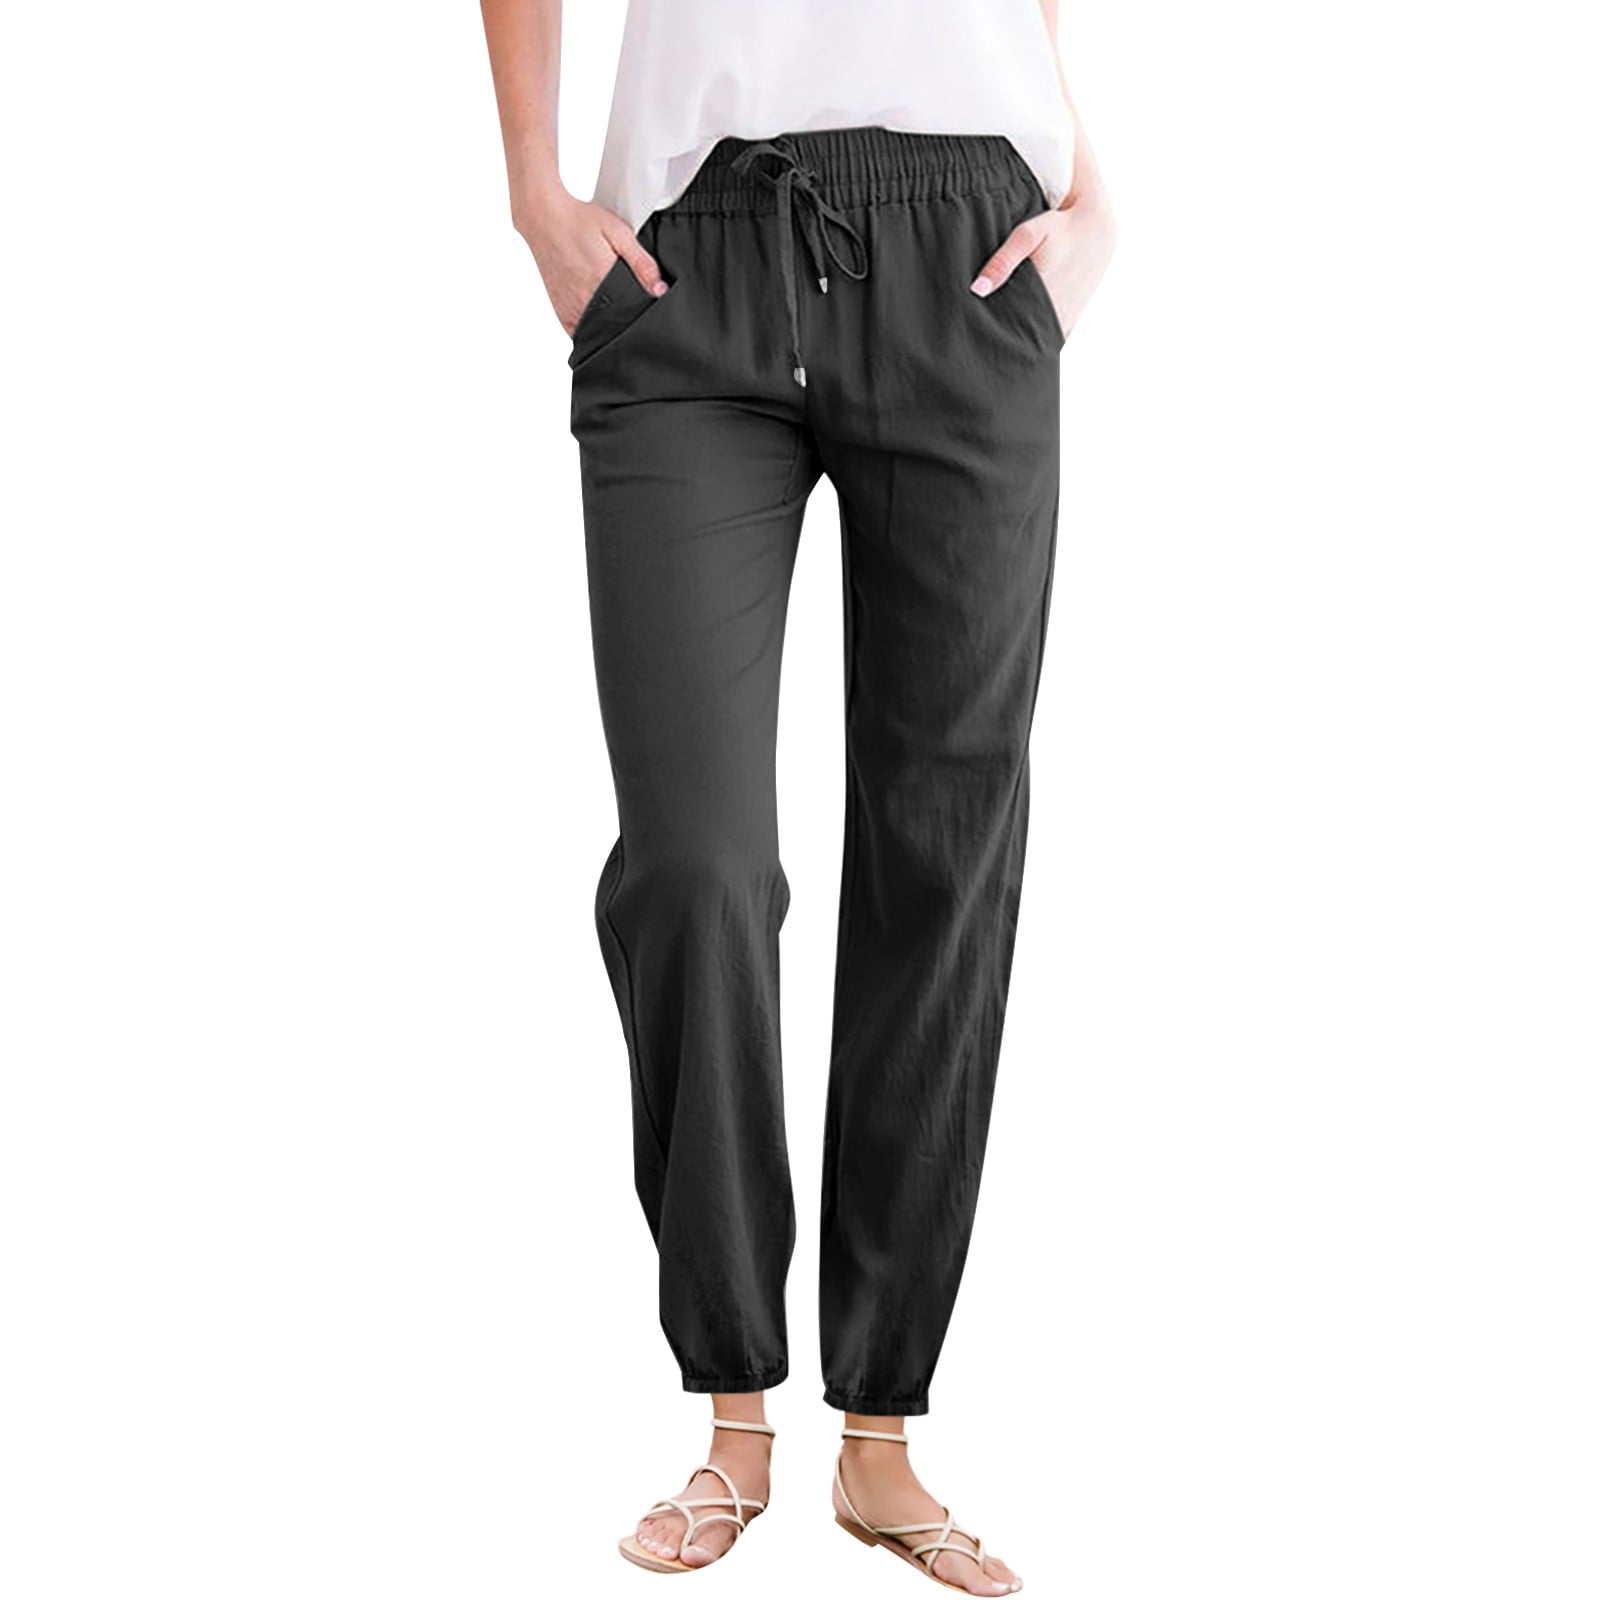 IVY PARK 'I' Low Rise Capri Legging Grey Black S | Capri leggings, Legging,  Clothes design